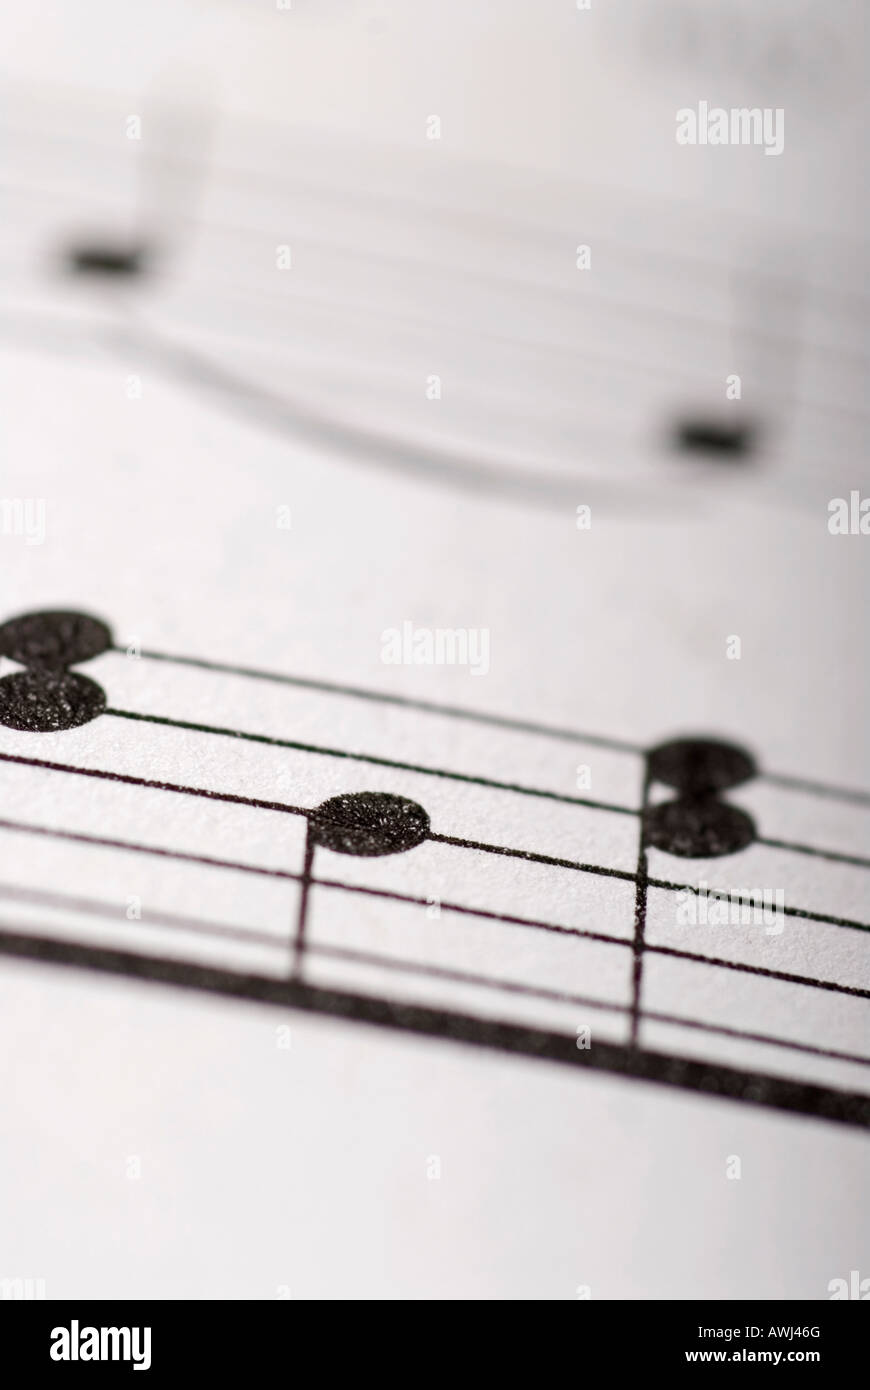 Stock photo de partituras con notas musicales Foto de stock